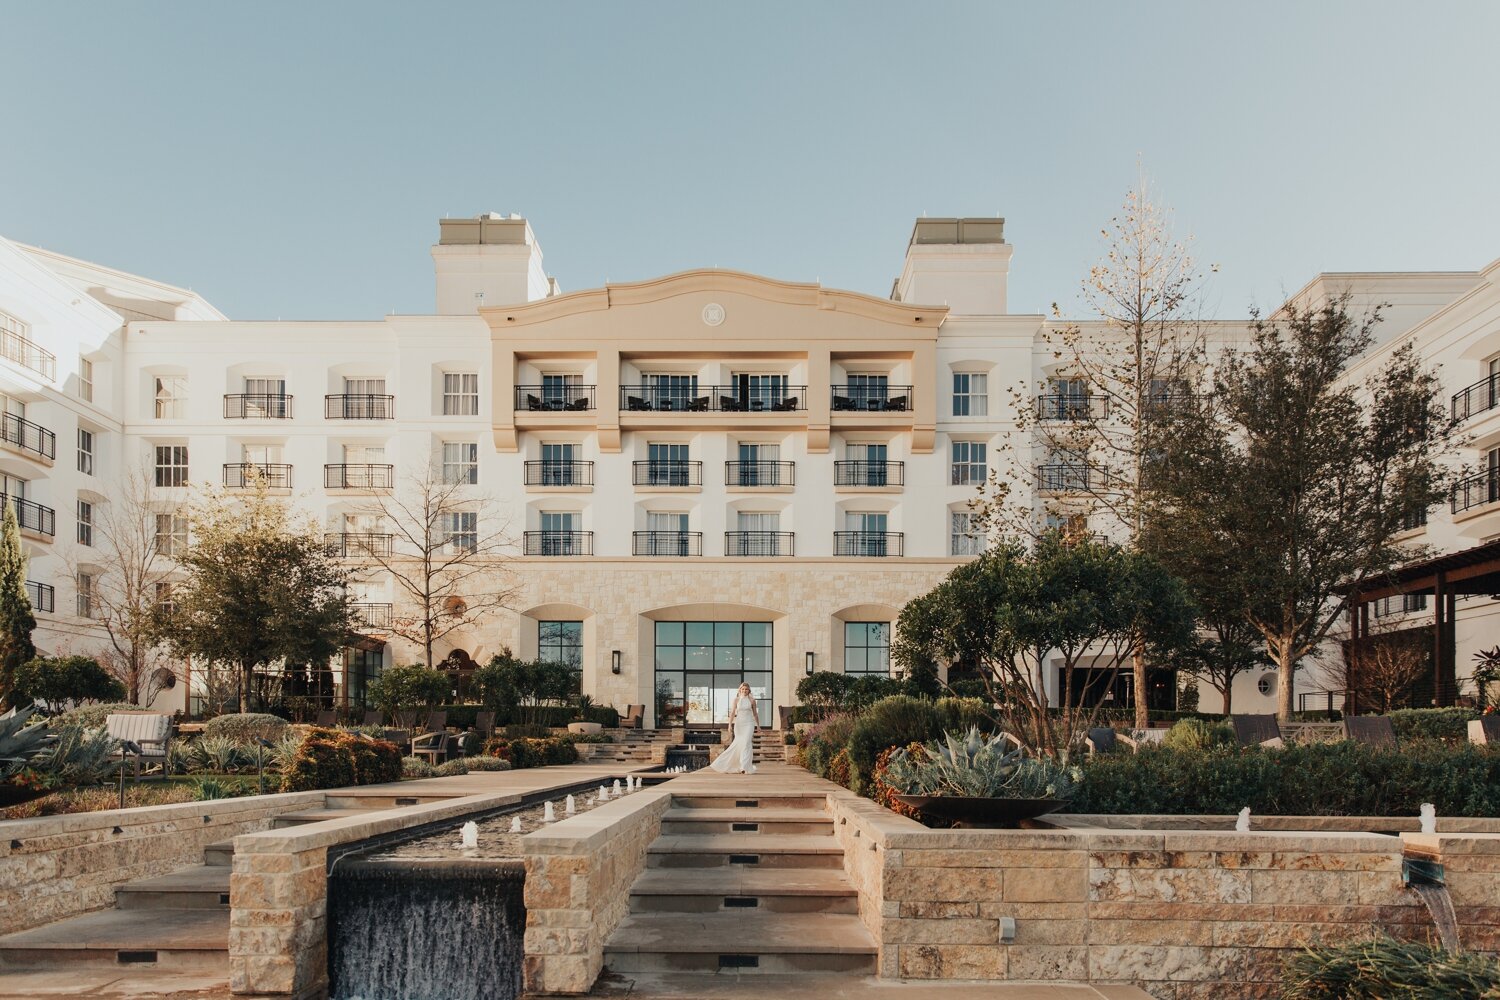 La Cantera Resort & Spa, San Antonio, TX — The Outbounder